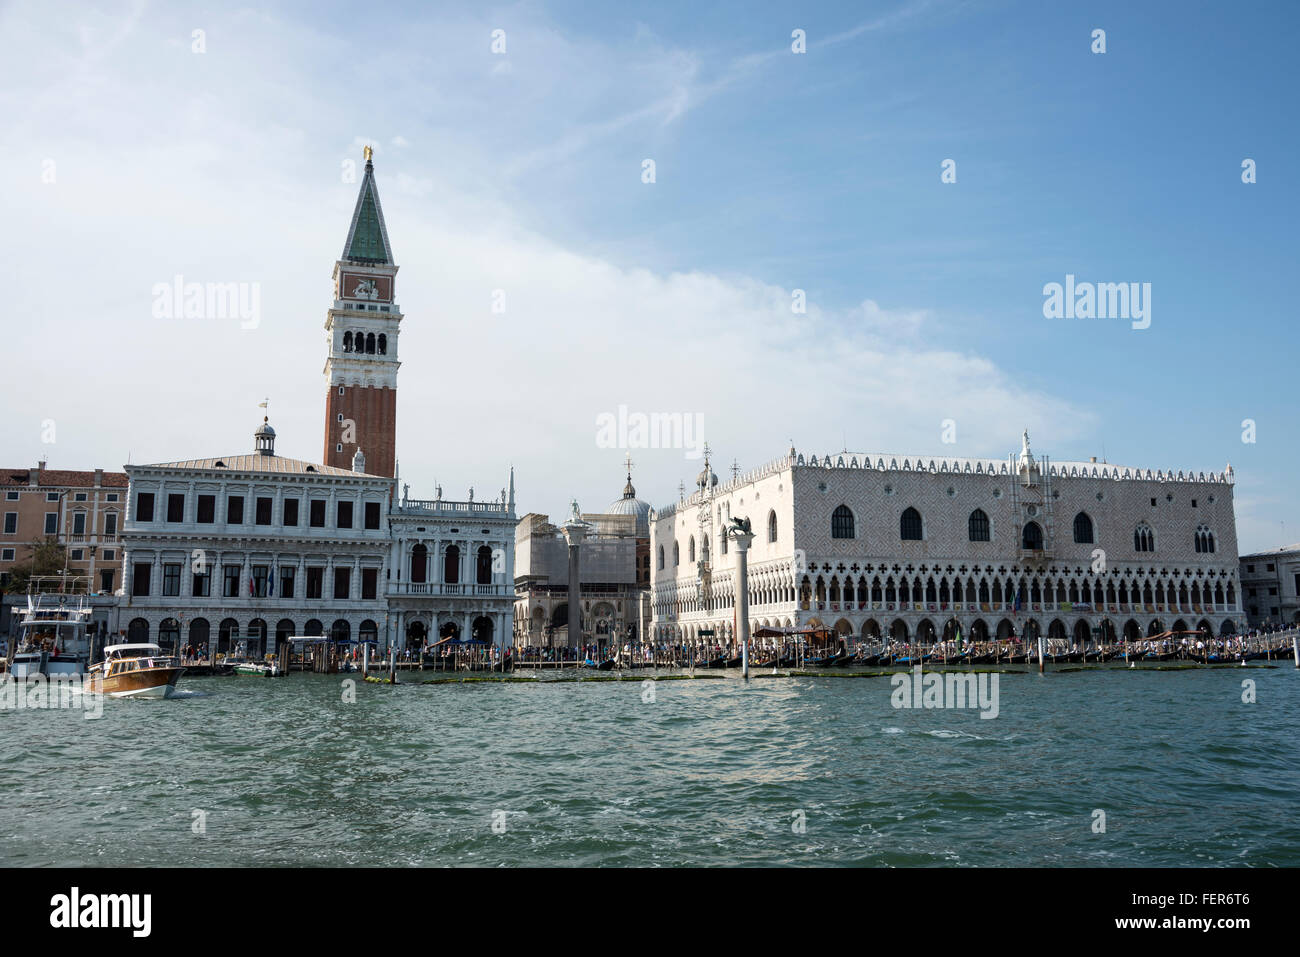 Sulla Riva degli Schiavoni che corre lungo la riva della laguna veneta a Venezia, Italia, è l'alto campanile, Campanile di Foto Stock